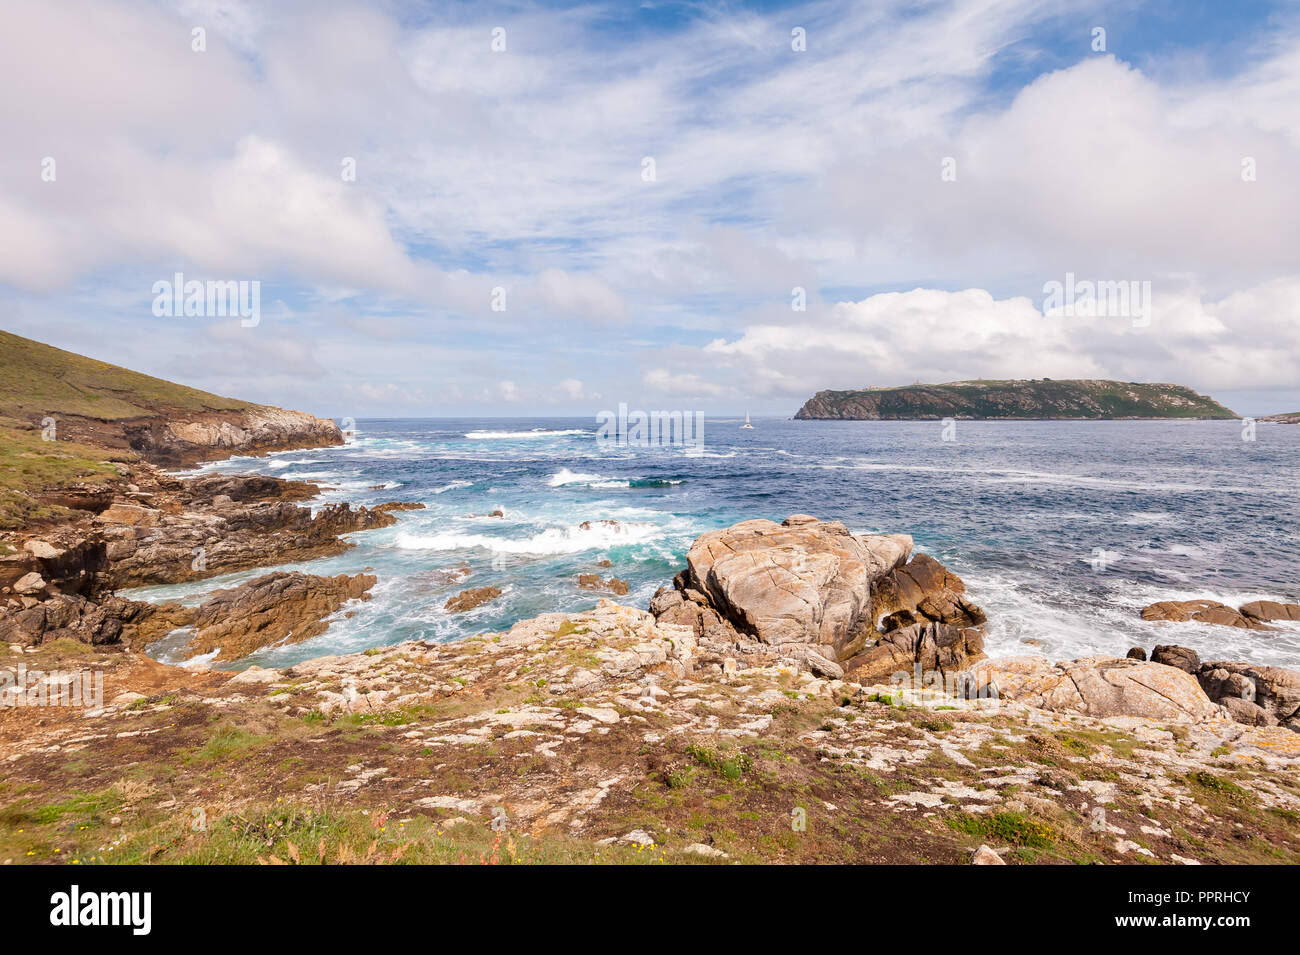 Paesaggio di mare, cliff cielo blu con nuvole. Costa dell'oceano nel nord ovest della Spagna, regione della Galizia. Viaggio turistico. Foto Stock